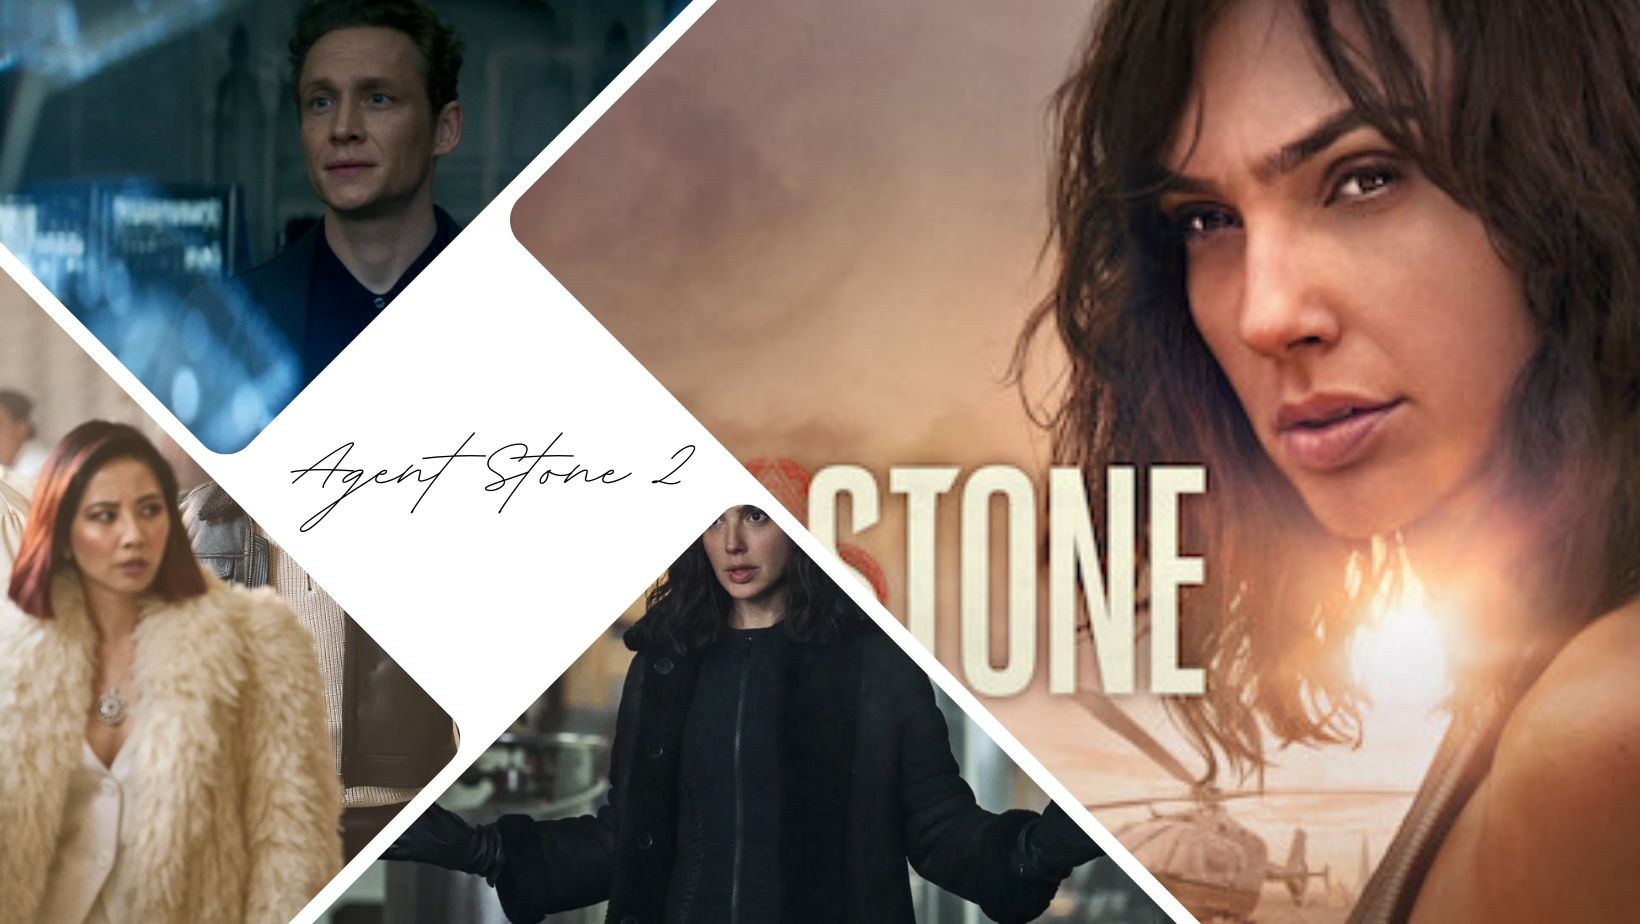 Suite d'Agent Stone : un Agent Stone 2 sur Netflix est-il prévu ?